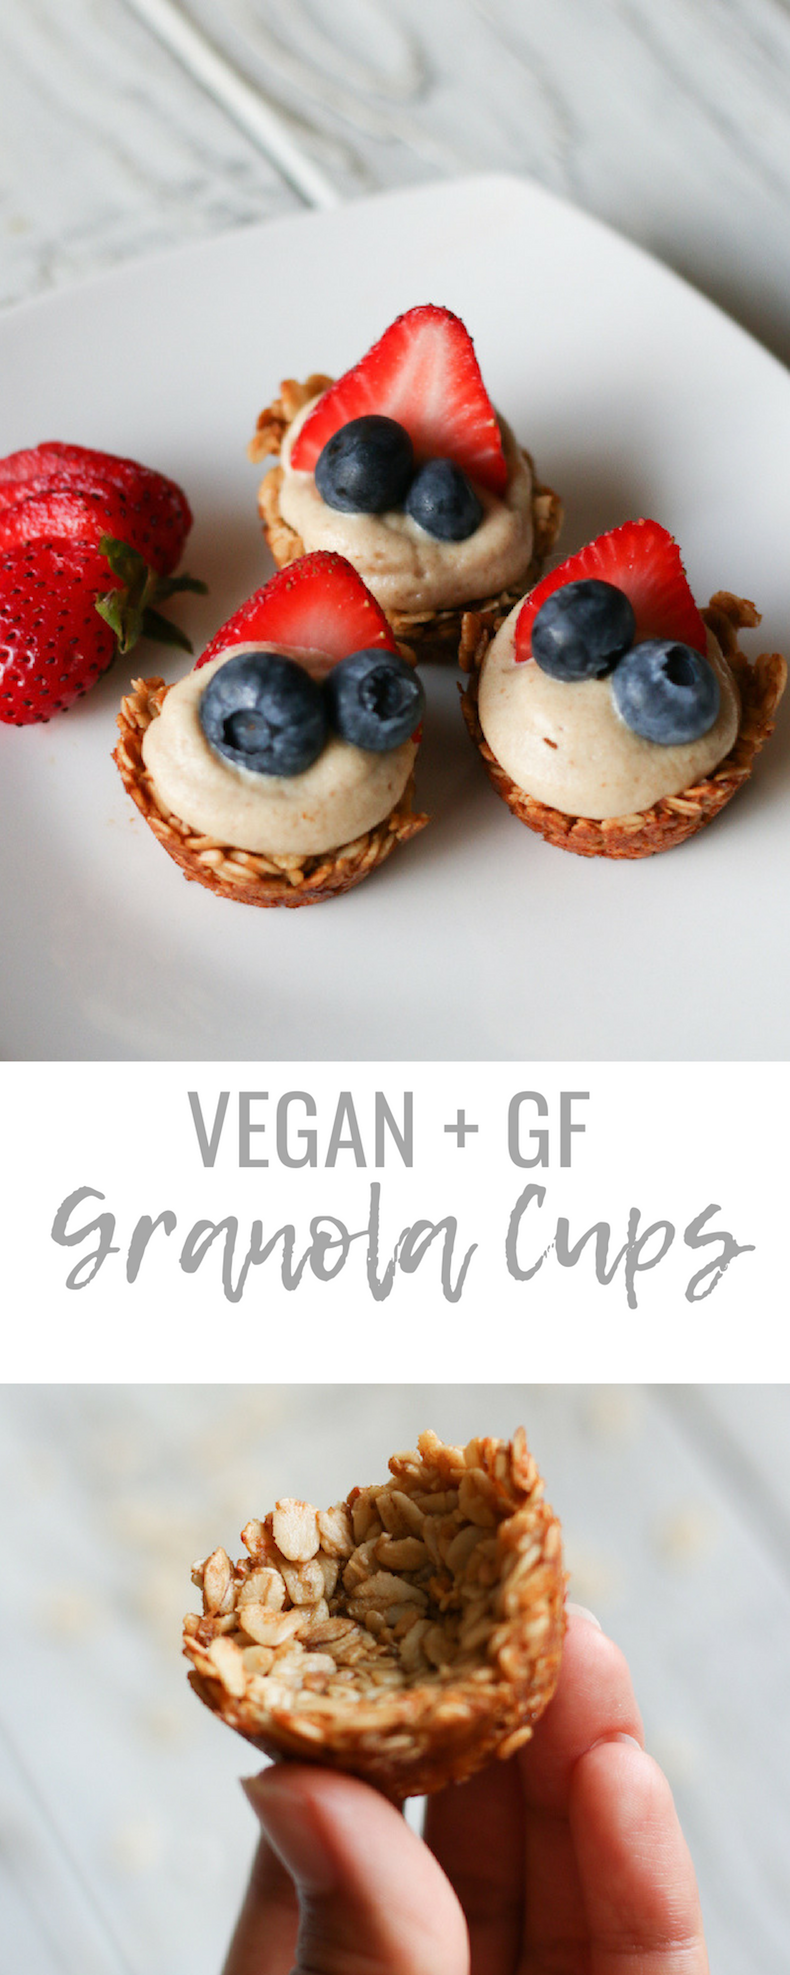 Vegan Granola Cups with Cashew Cream YogurtVegan Granola Cups with Cashew Cream Yogurt